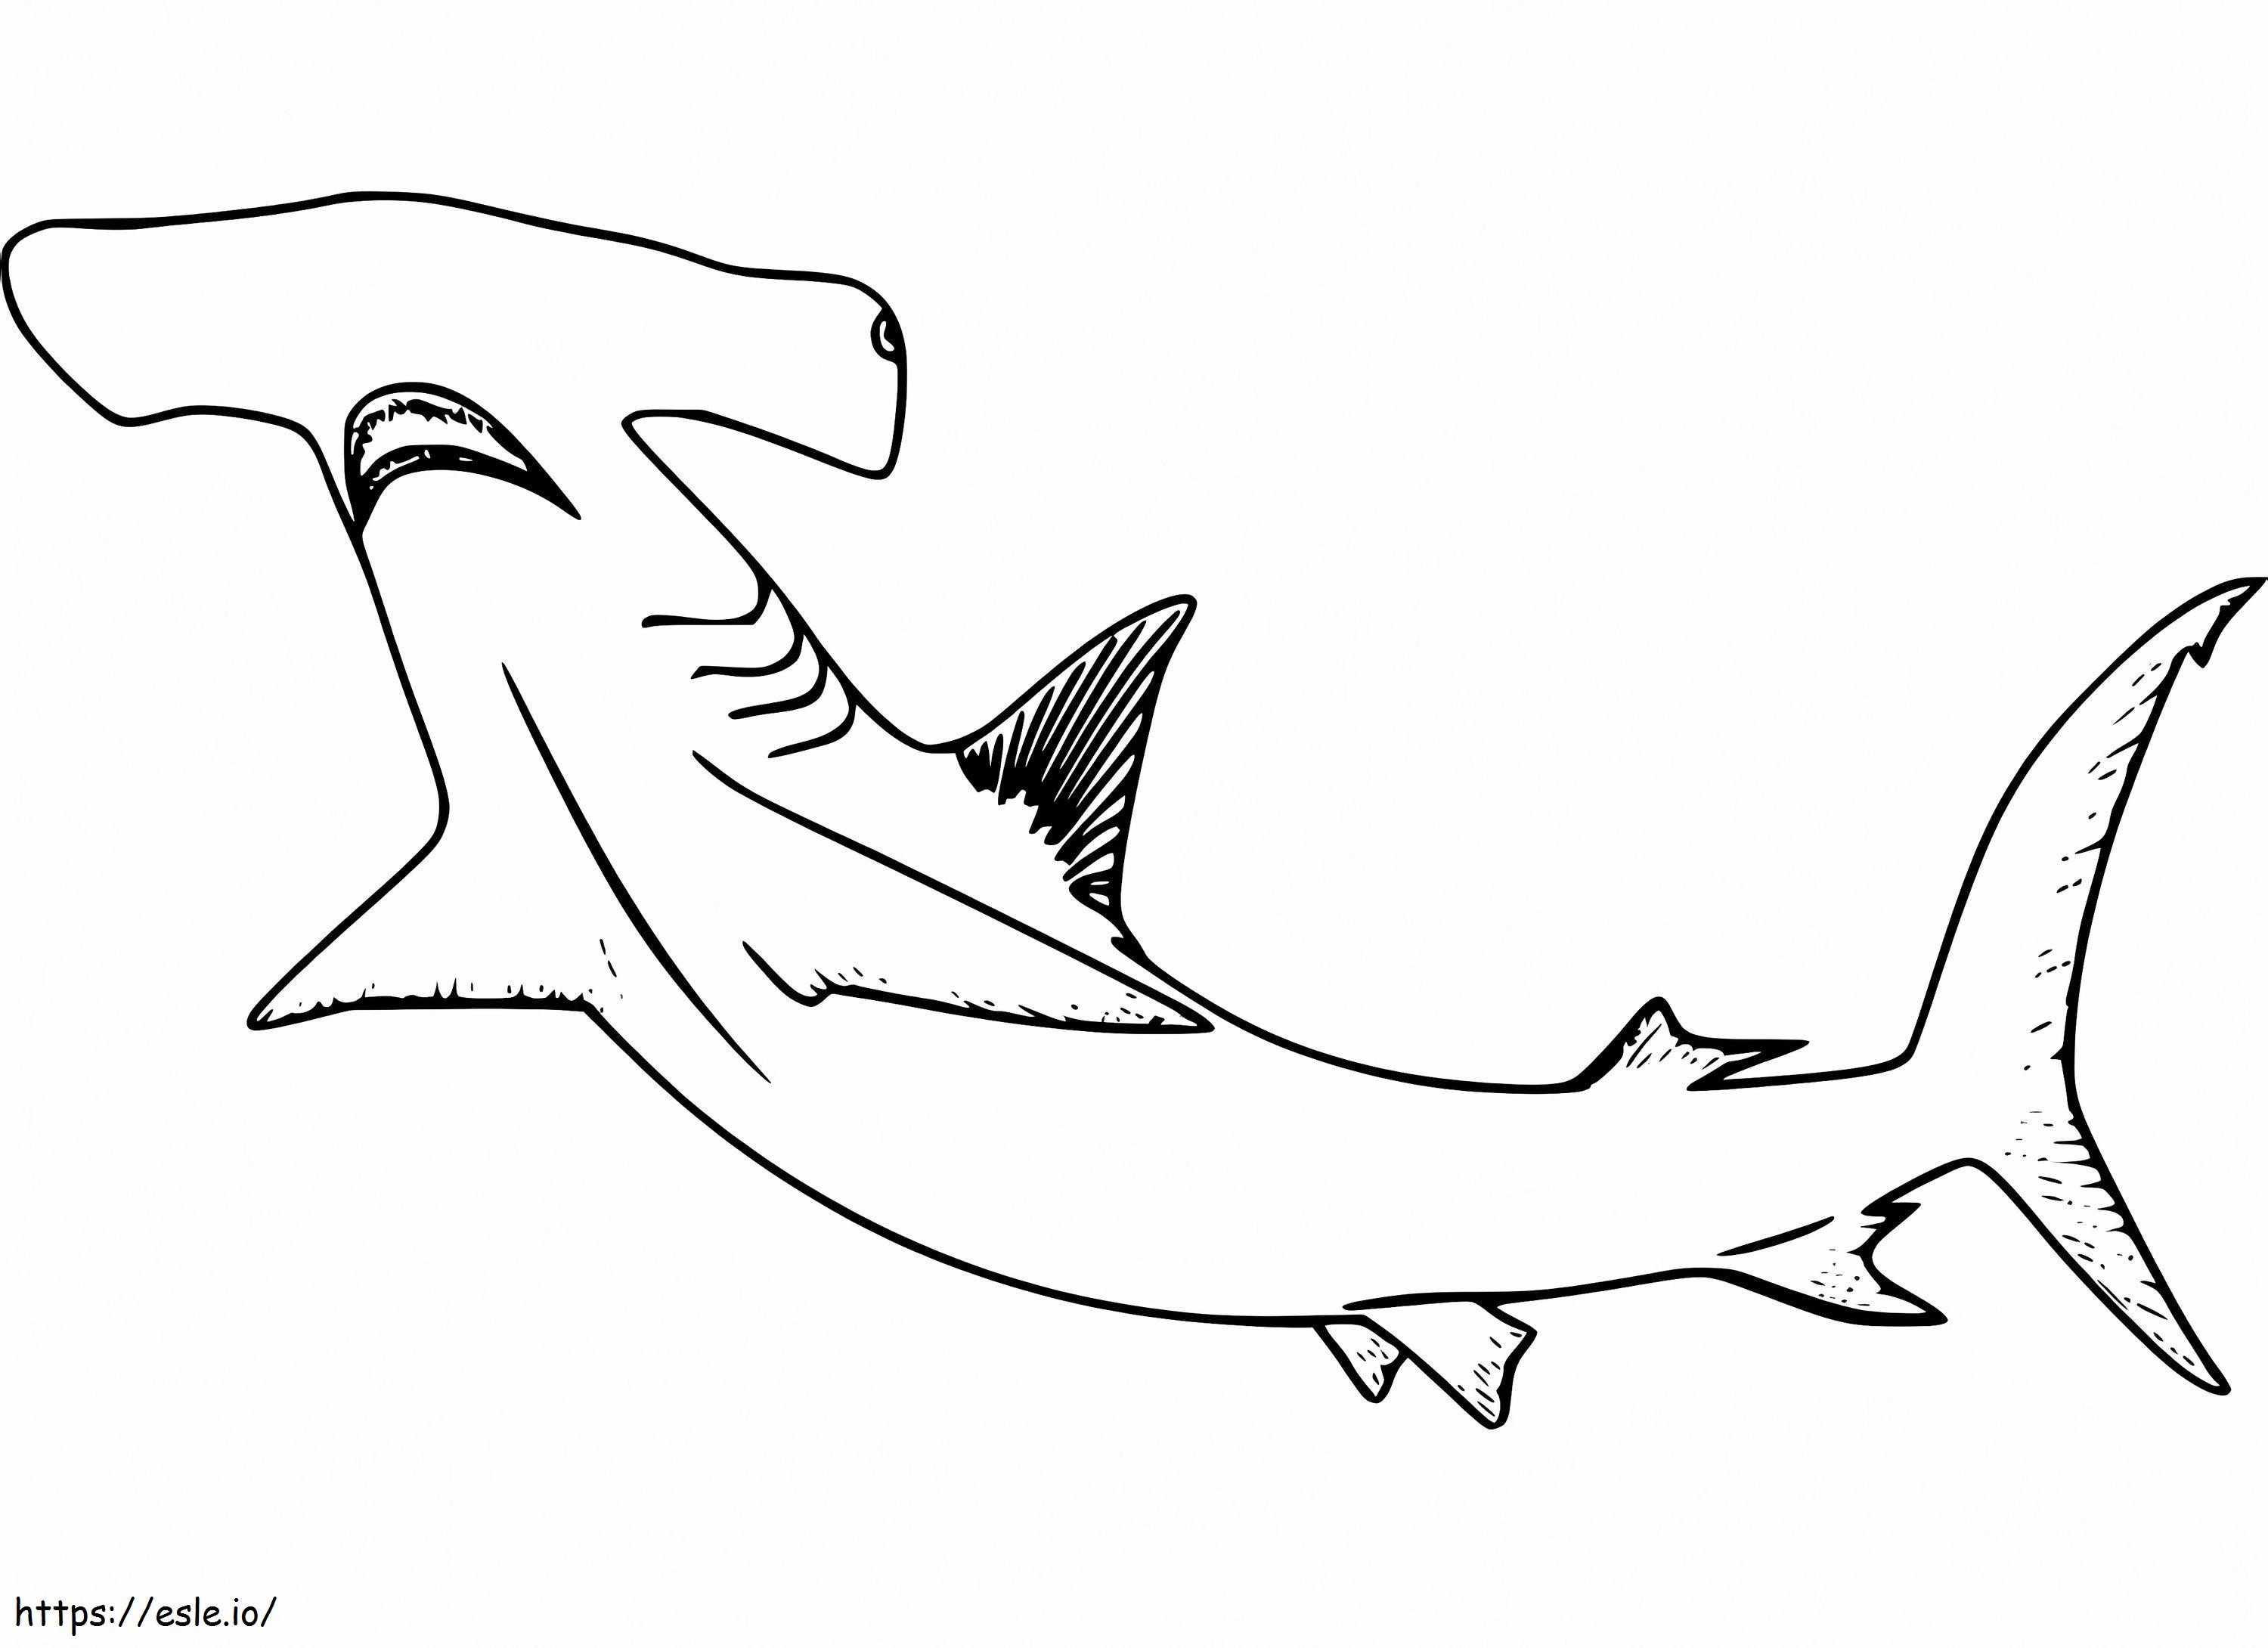 Çekiçbaş Köpekbalığı 8 boyama